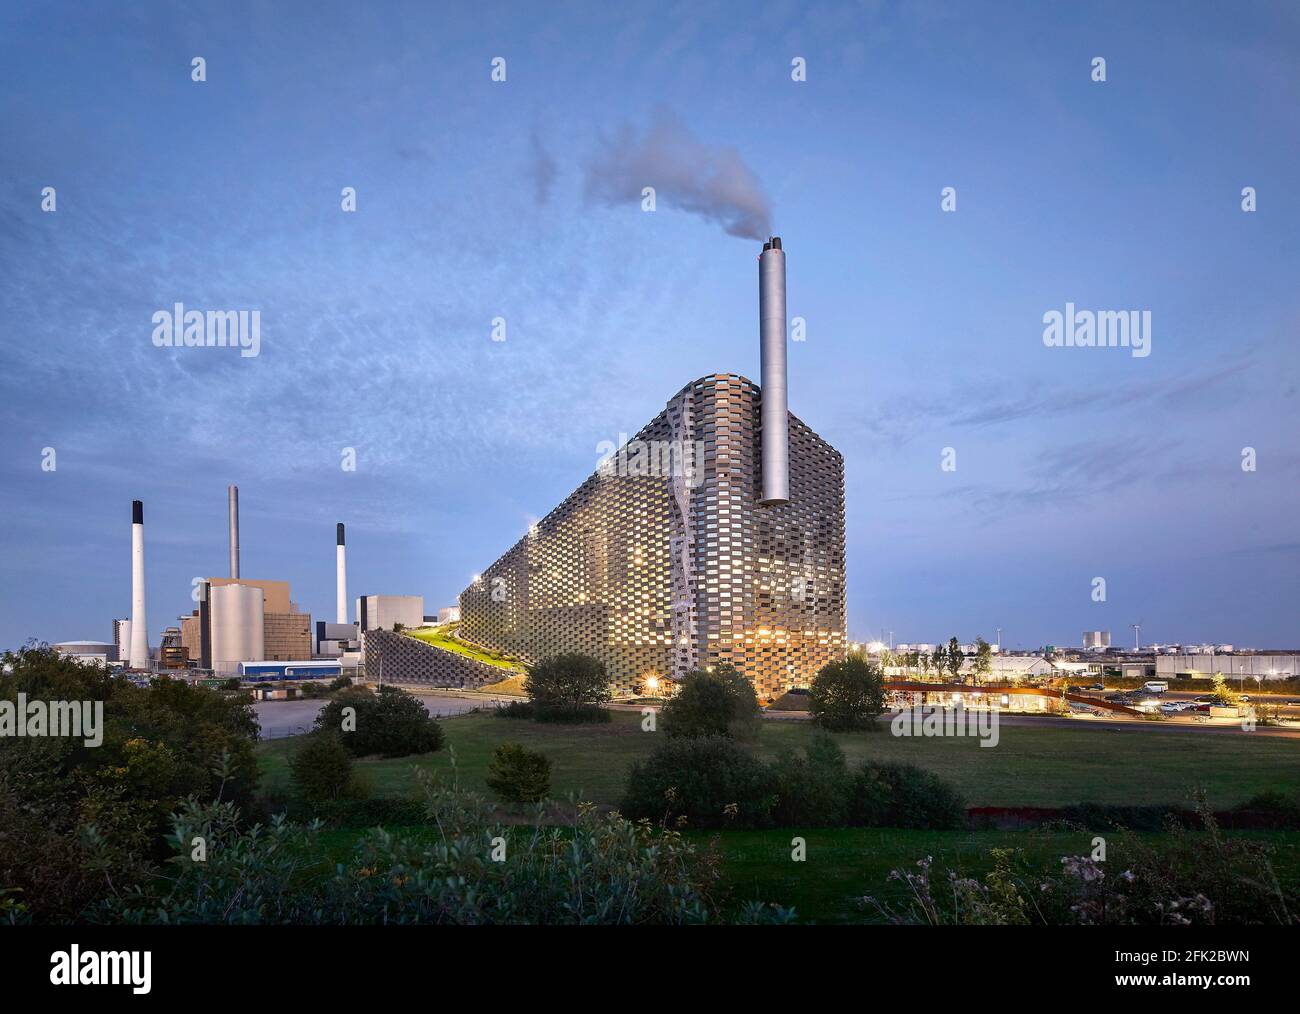 Paisaje industrial con central eléctrica al atardecer. Central de CoppenHill, Copenhague, Dinamarca. Arquitecto: Grupo BIG Bjarke Ingels, 2019. Foto de stock